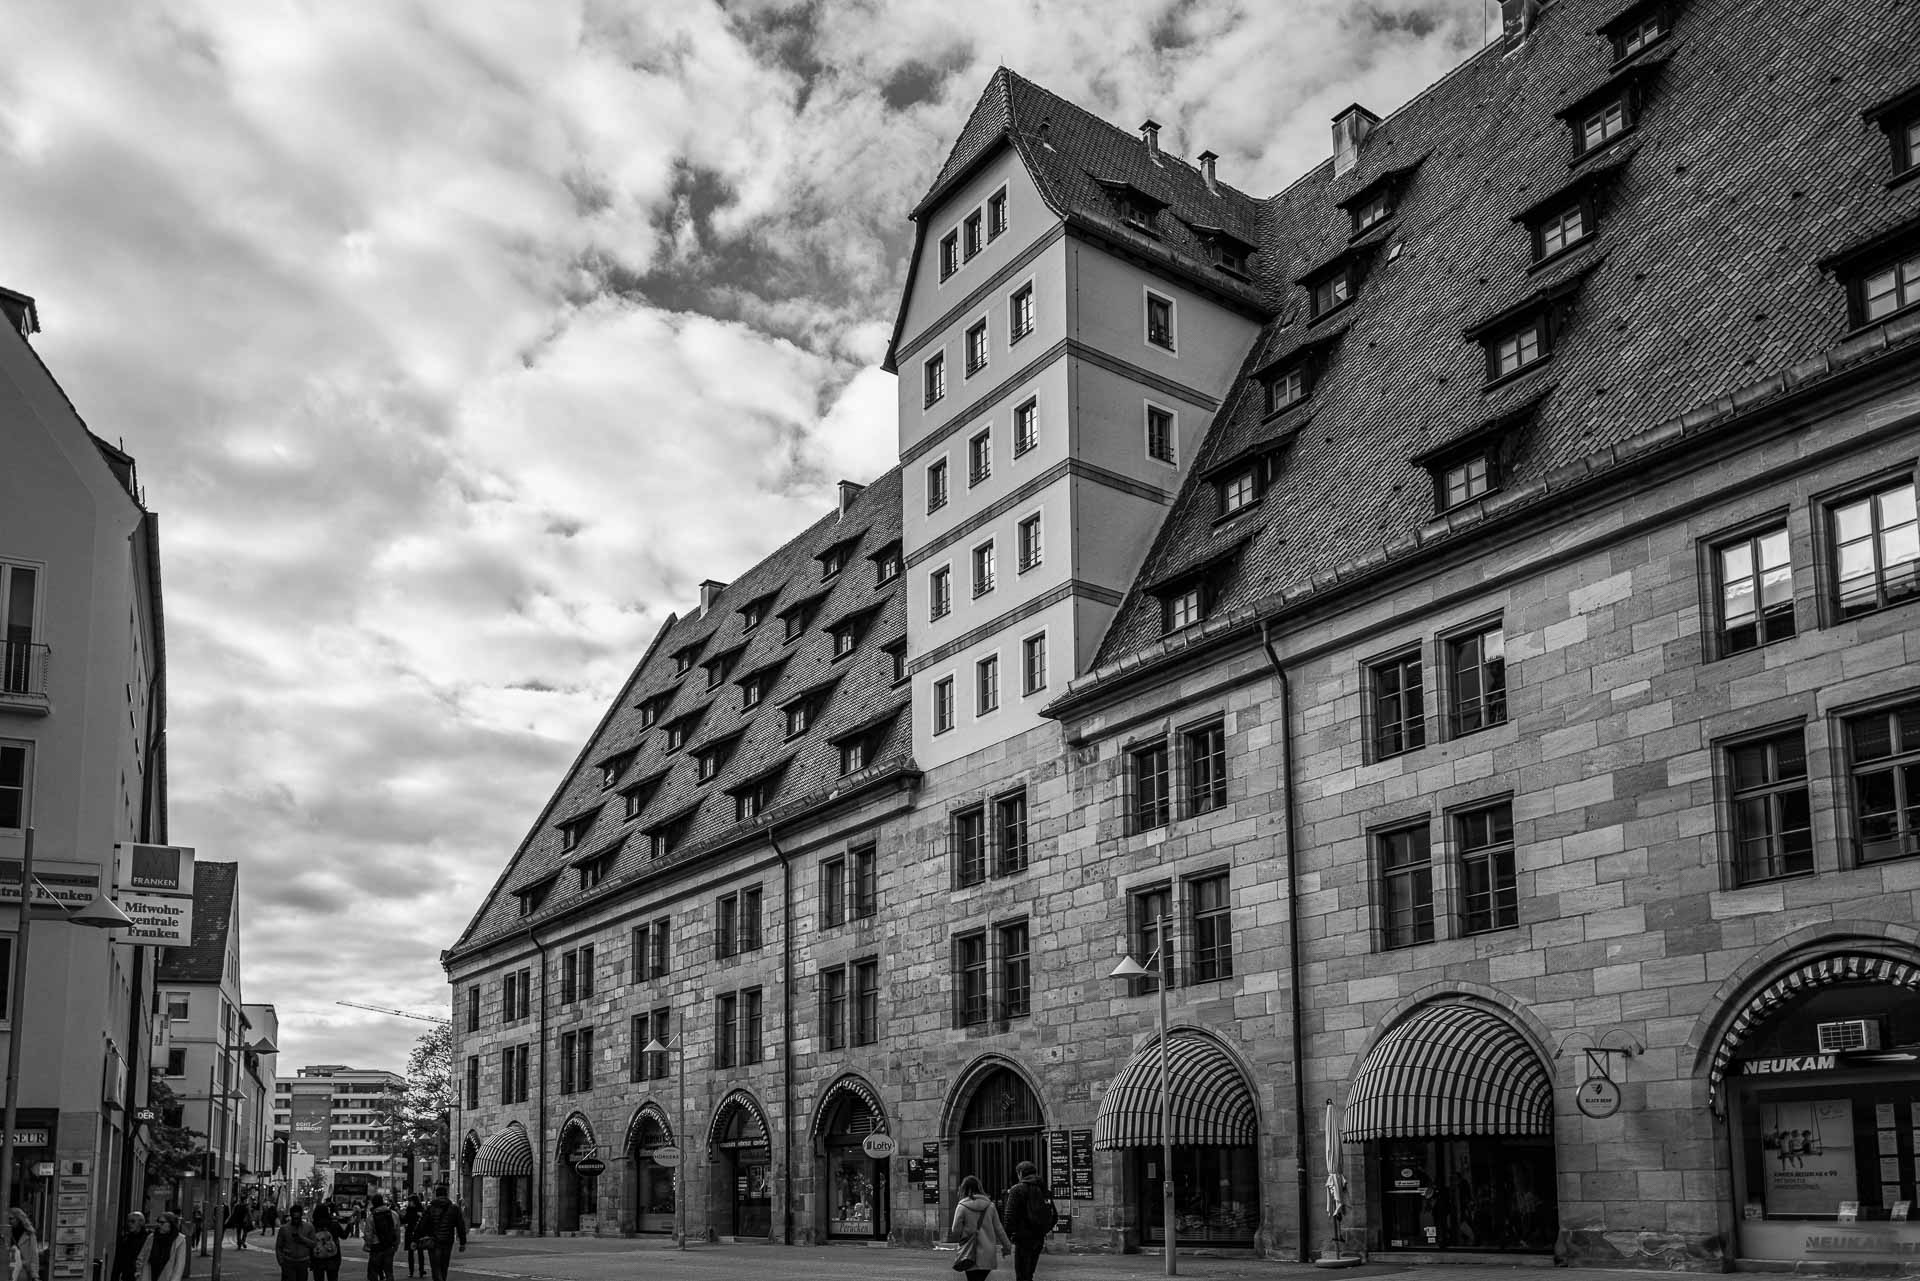 Imposante Architektur am Hallplatz im Lorenzviertel - hier ehemalige Getreidespeicher